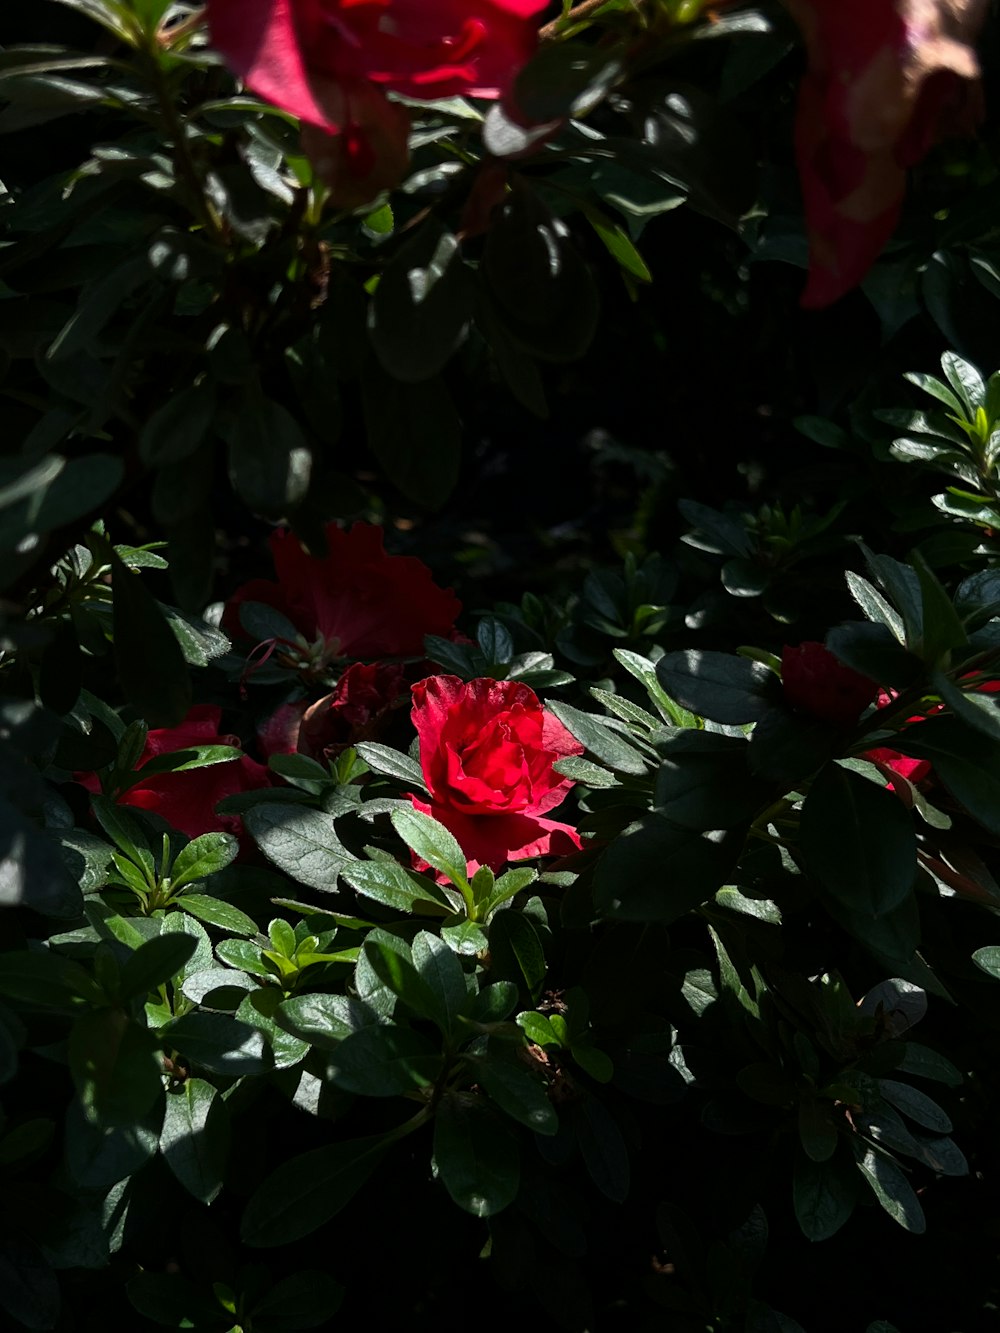 gros plan d’une rose rouge entourée de feuilles vertes